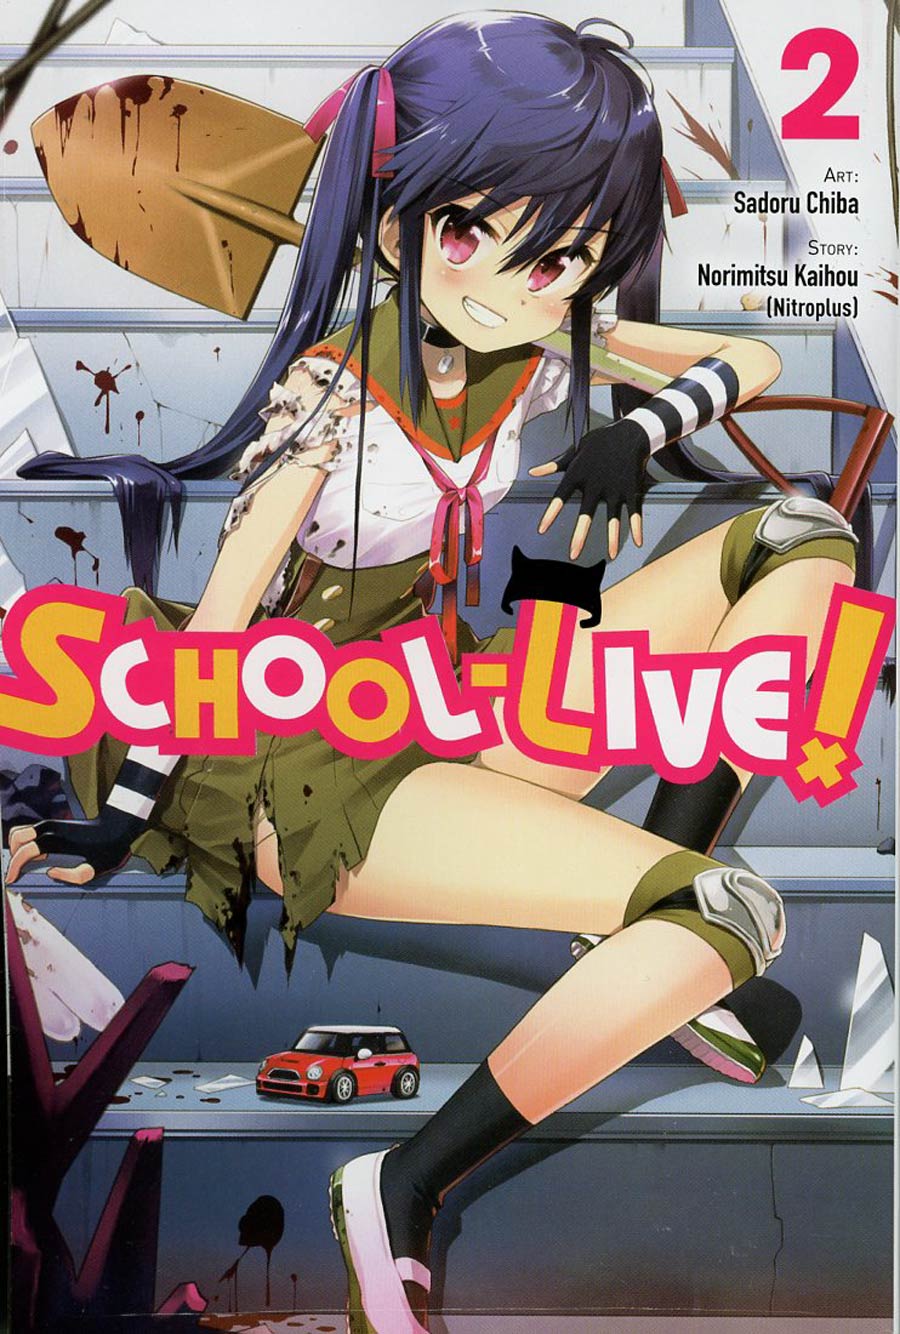 School-Live Vol 2 GN